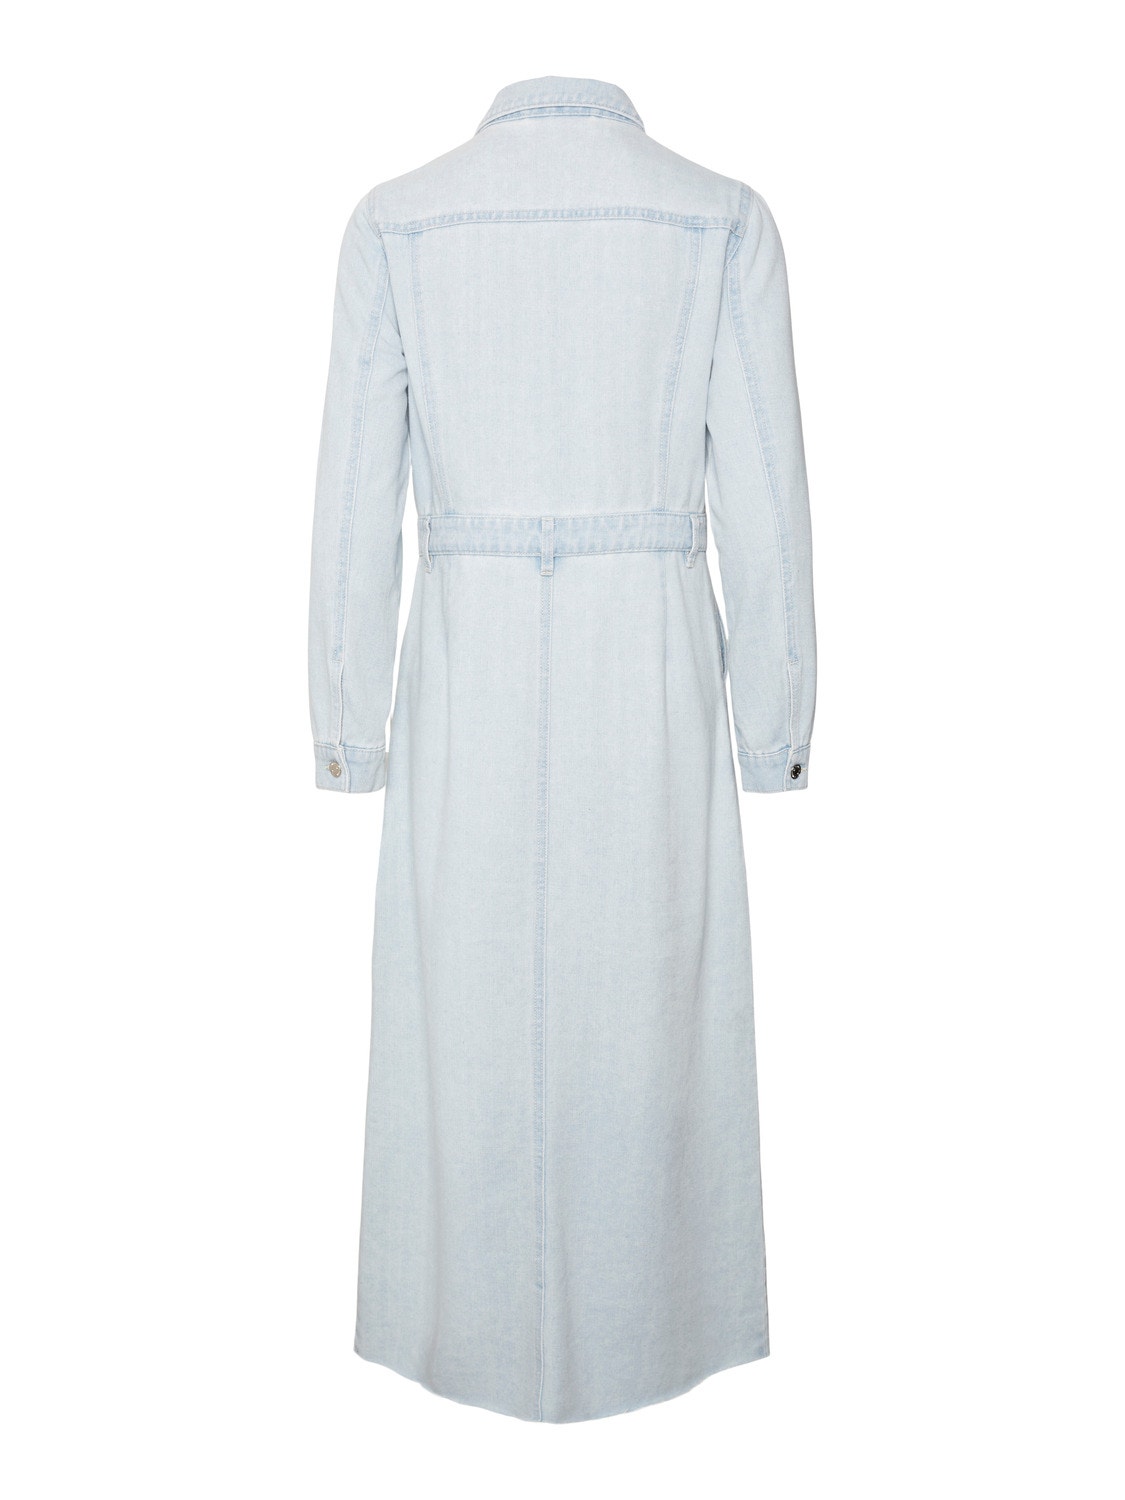 Vero Moda VMMOLLY Lang kjole -Light Blue Denim - 10311586